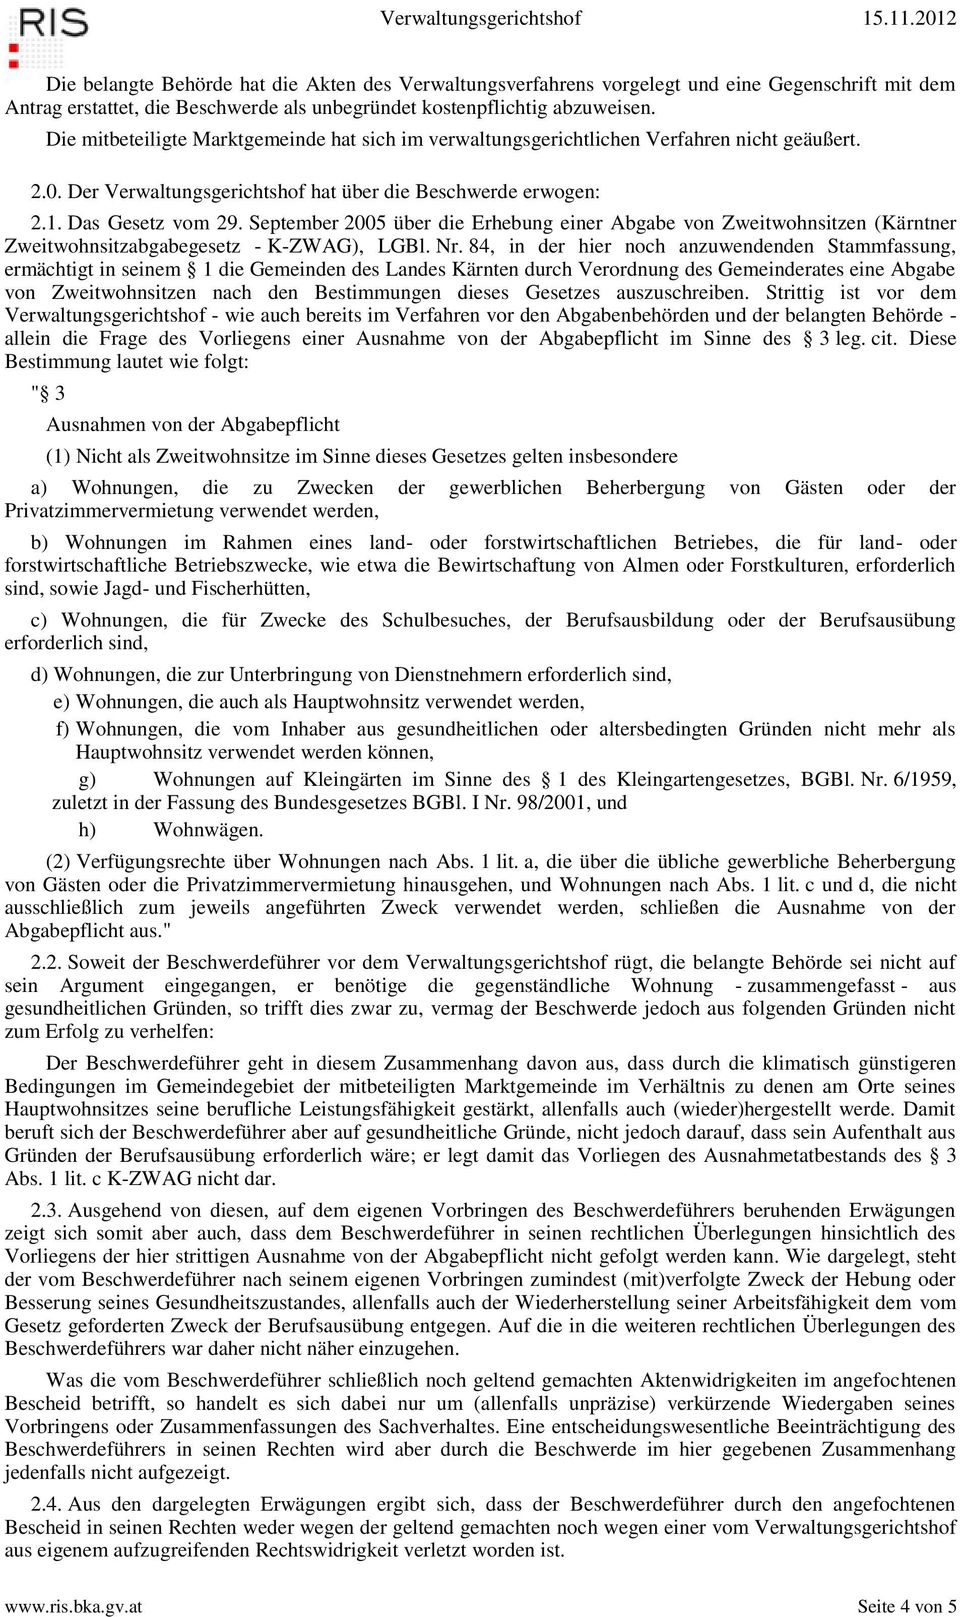 September 2005 über die Erhebung einer Abgabe von Zweitwohnsitzen (Kärntner Zweitwohnsitzabgabegesetz - K-ZWAG), LGBl. Nr.